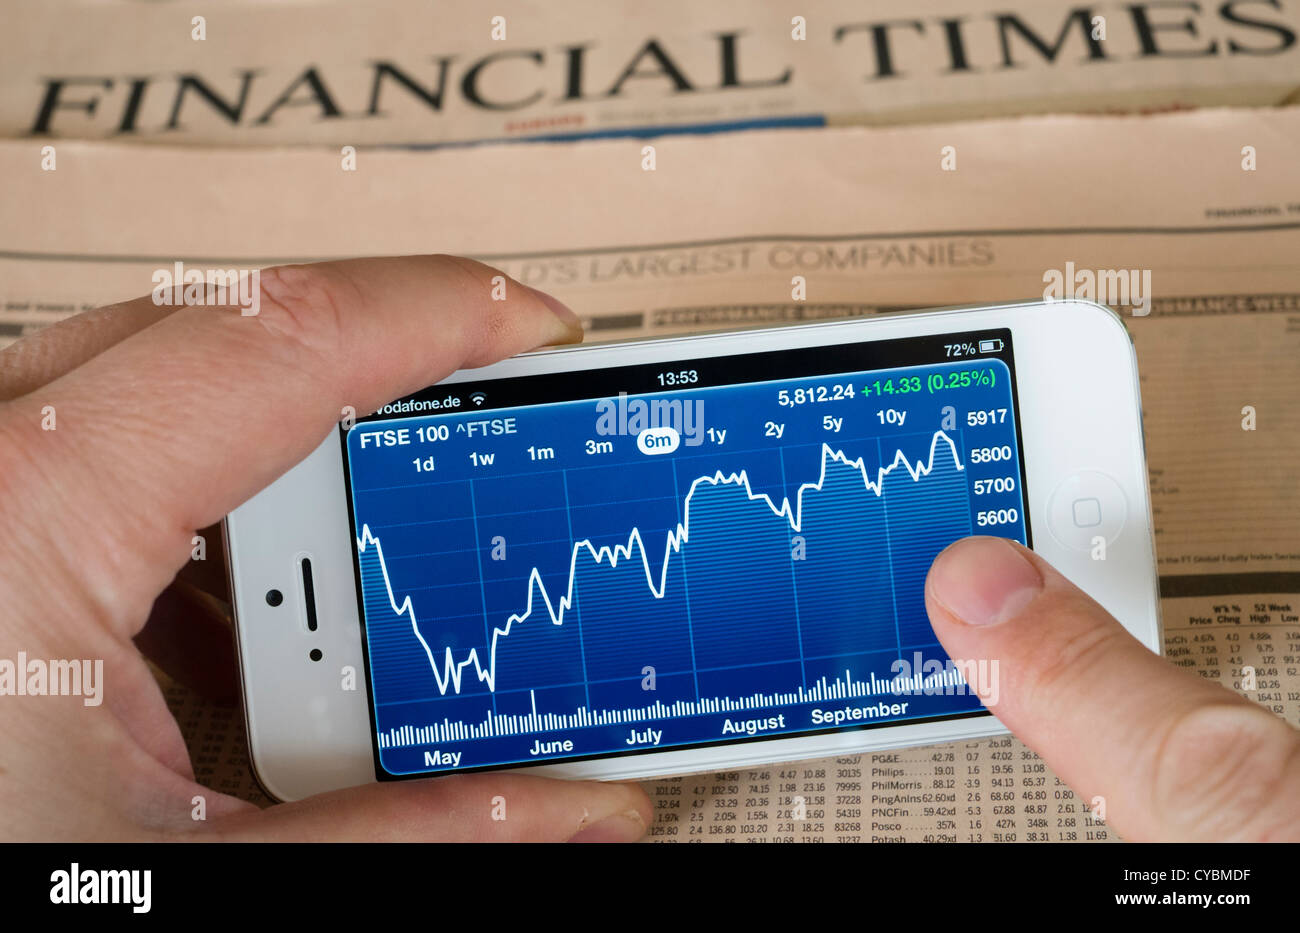 Detalle de la pantalla del teléfono inteligente iPhone 5 mostrando app financiera con datos del mercado bursátil Foto de stock